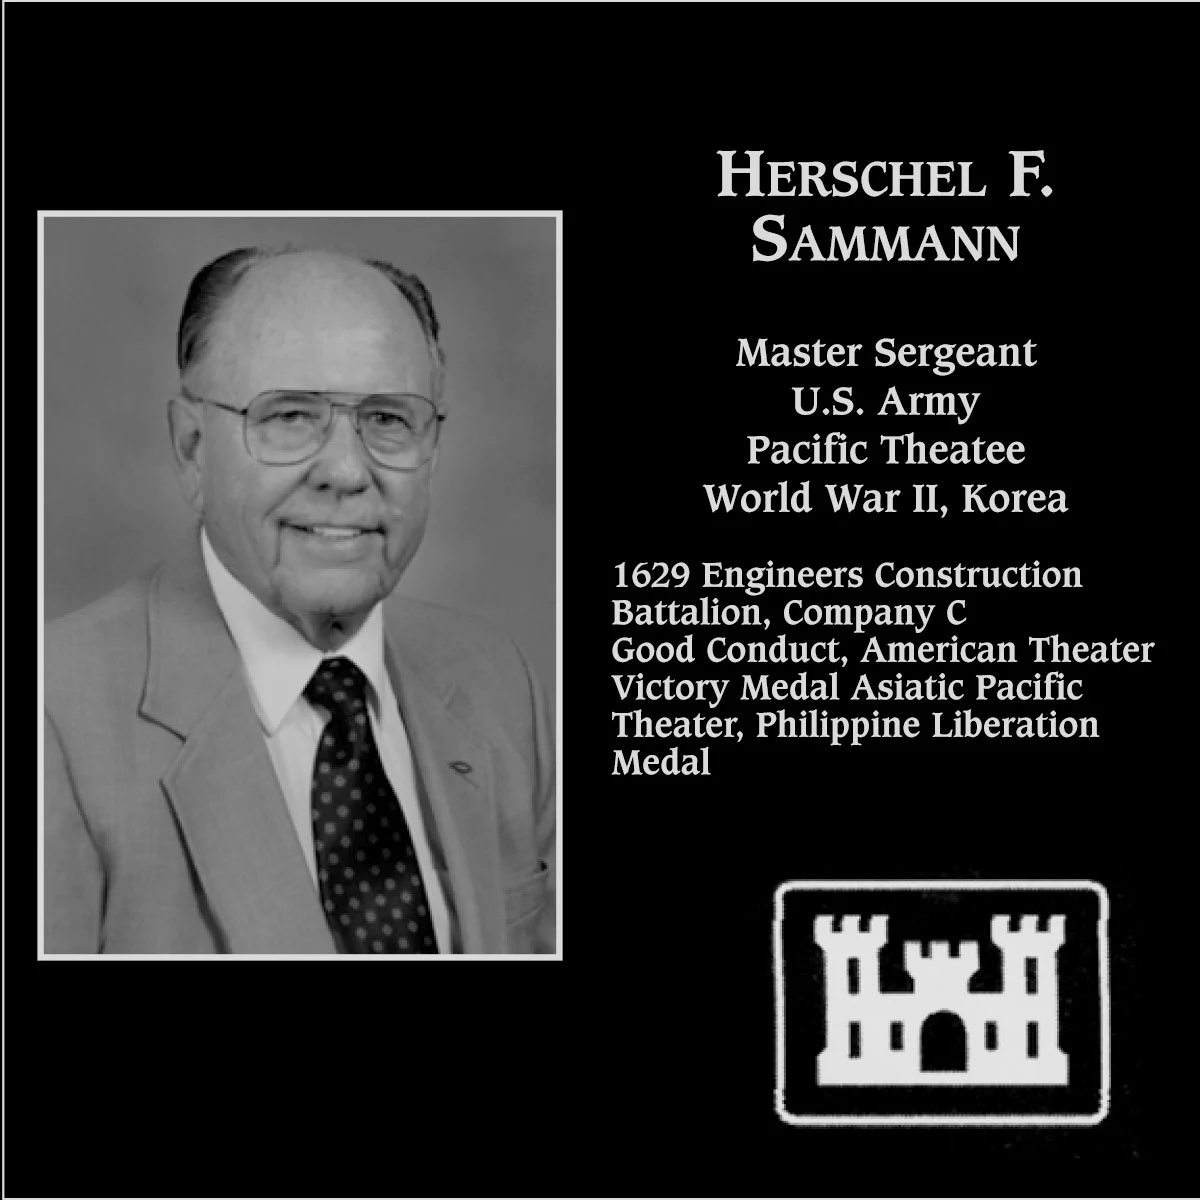 Herschel F. Sammann